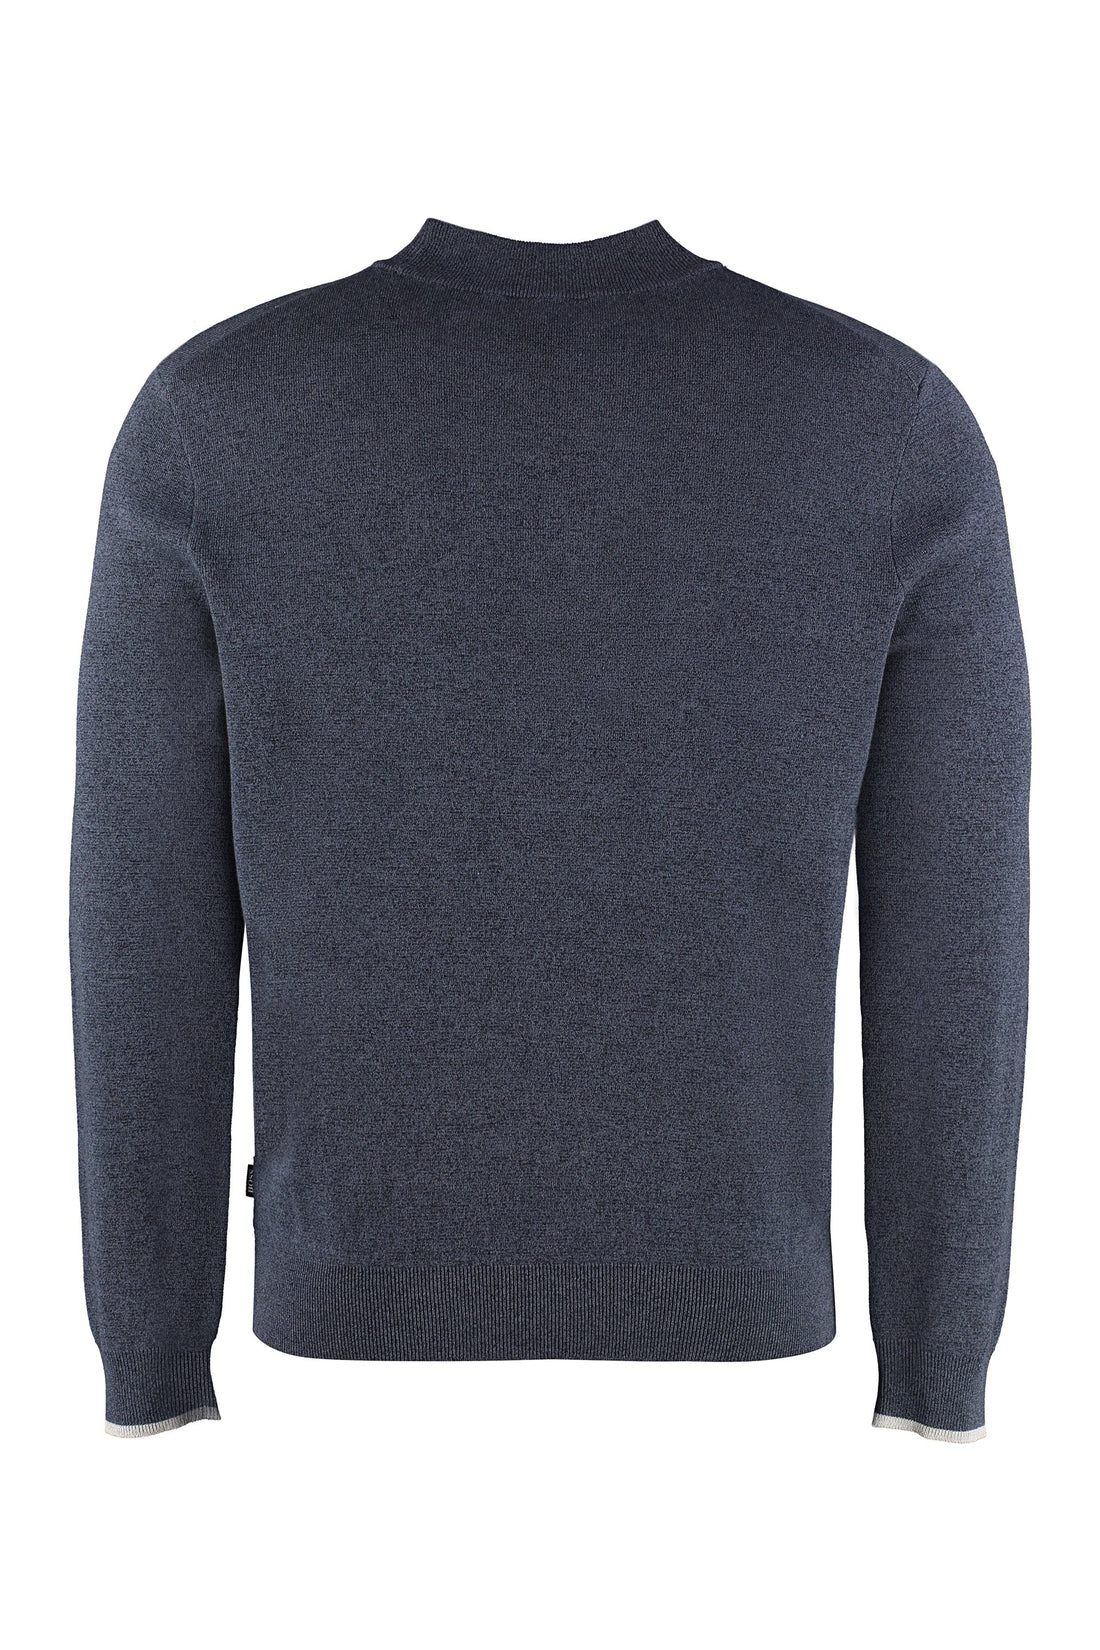 BOSS-OUTLET-SALE-Cotton sweater-ARCHIVIST